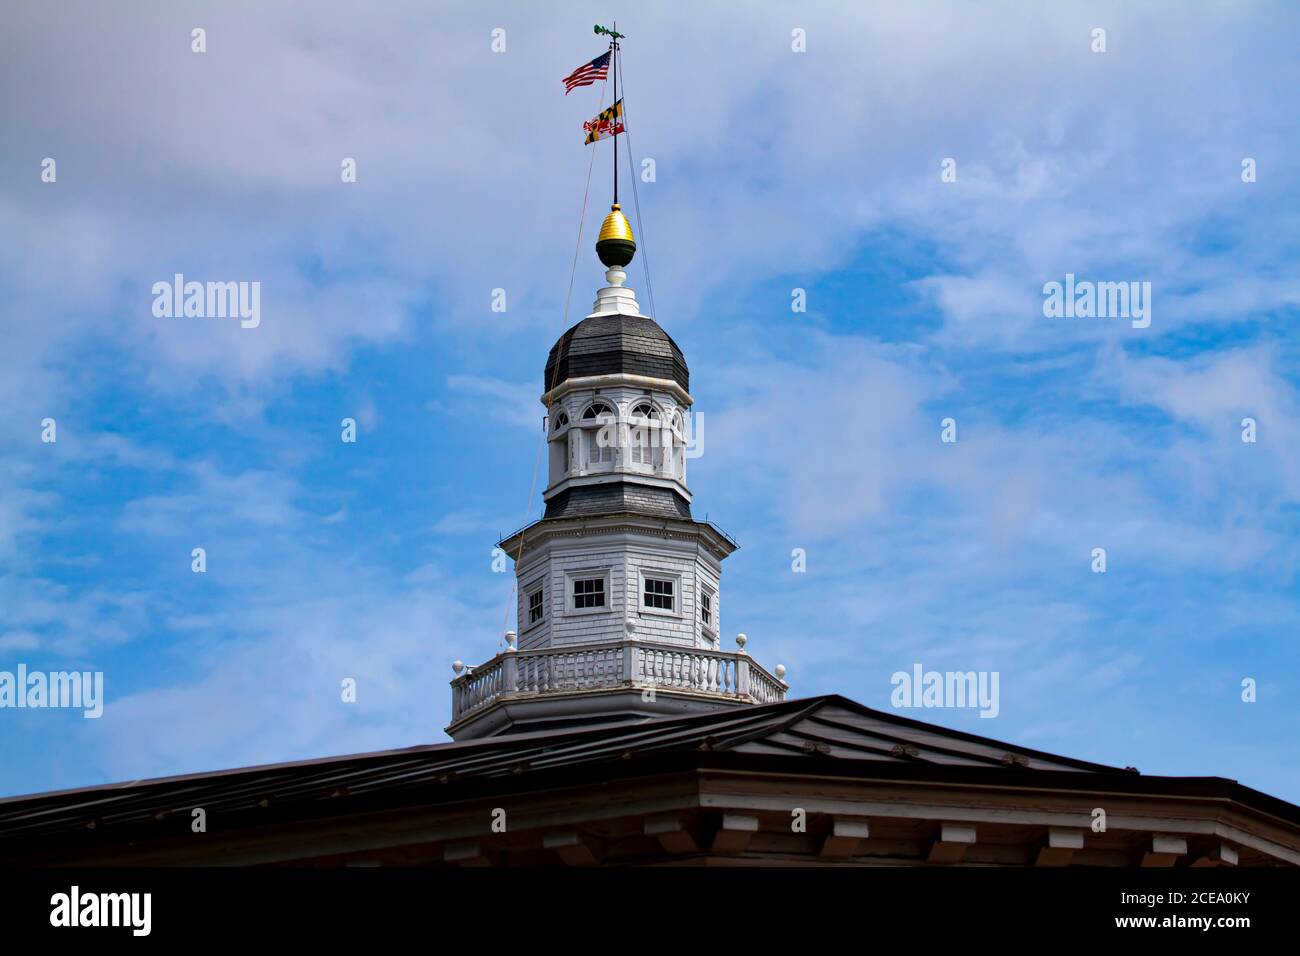 Vista a occhio di bug della casa di Stato del Maryland (state Capitol) di Annapolis. Immagine che mostra l'iconica torre con bandiere del Maryland e degli Stati Uniti. L'edificio ha Foto Stock